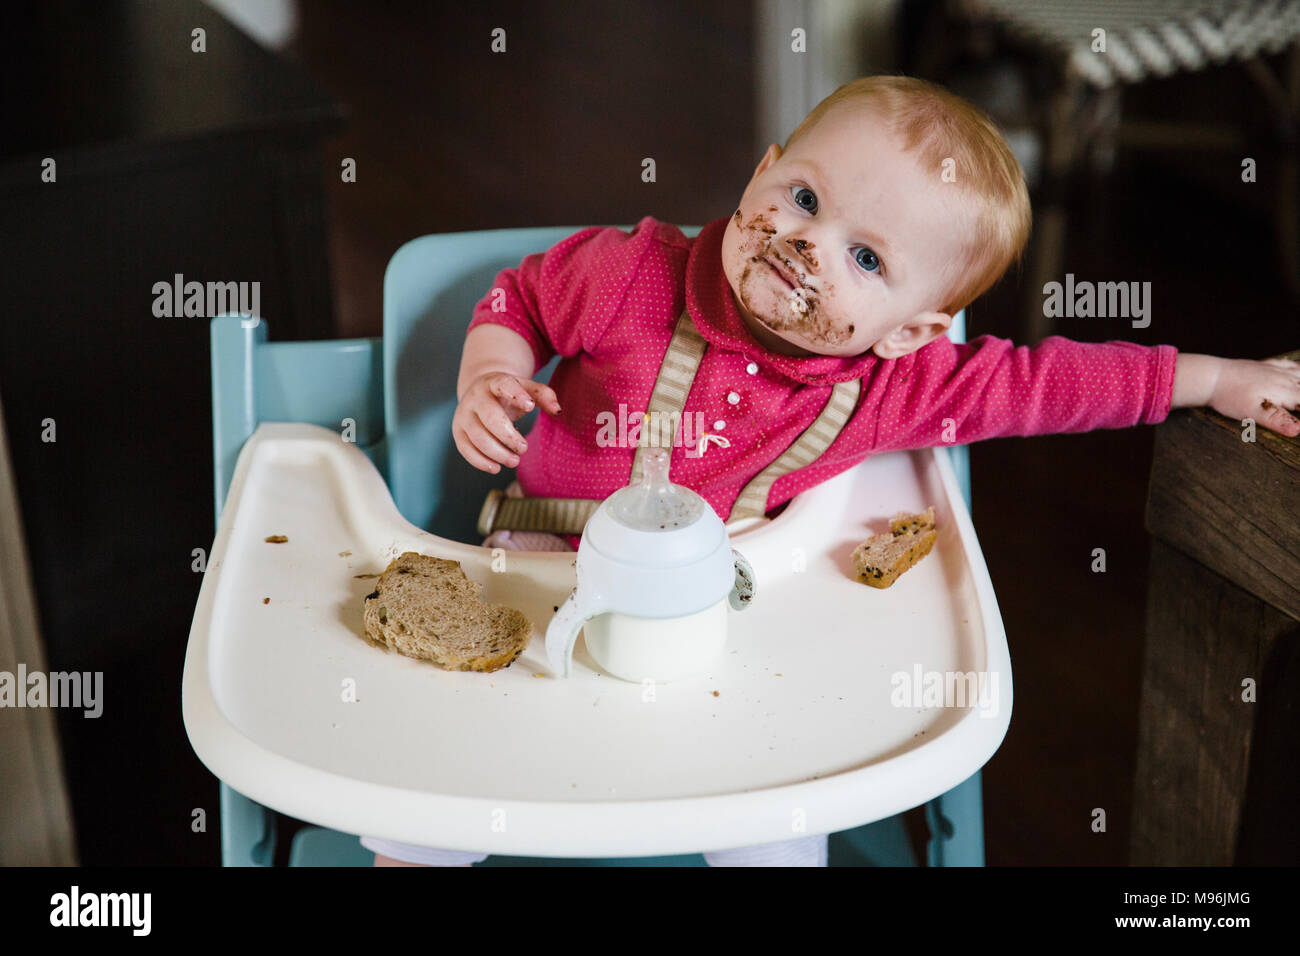 Bébé dans une chaise haute avec repas manger visage malpropre Banque D'Images